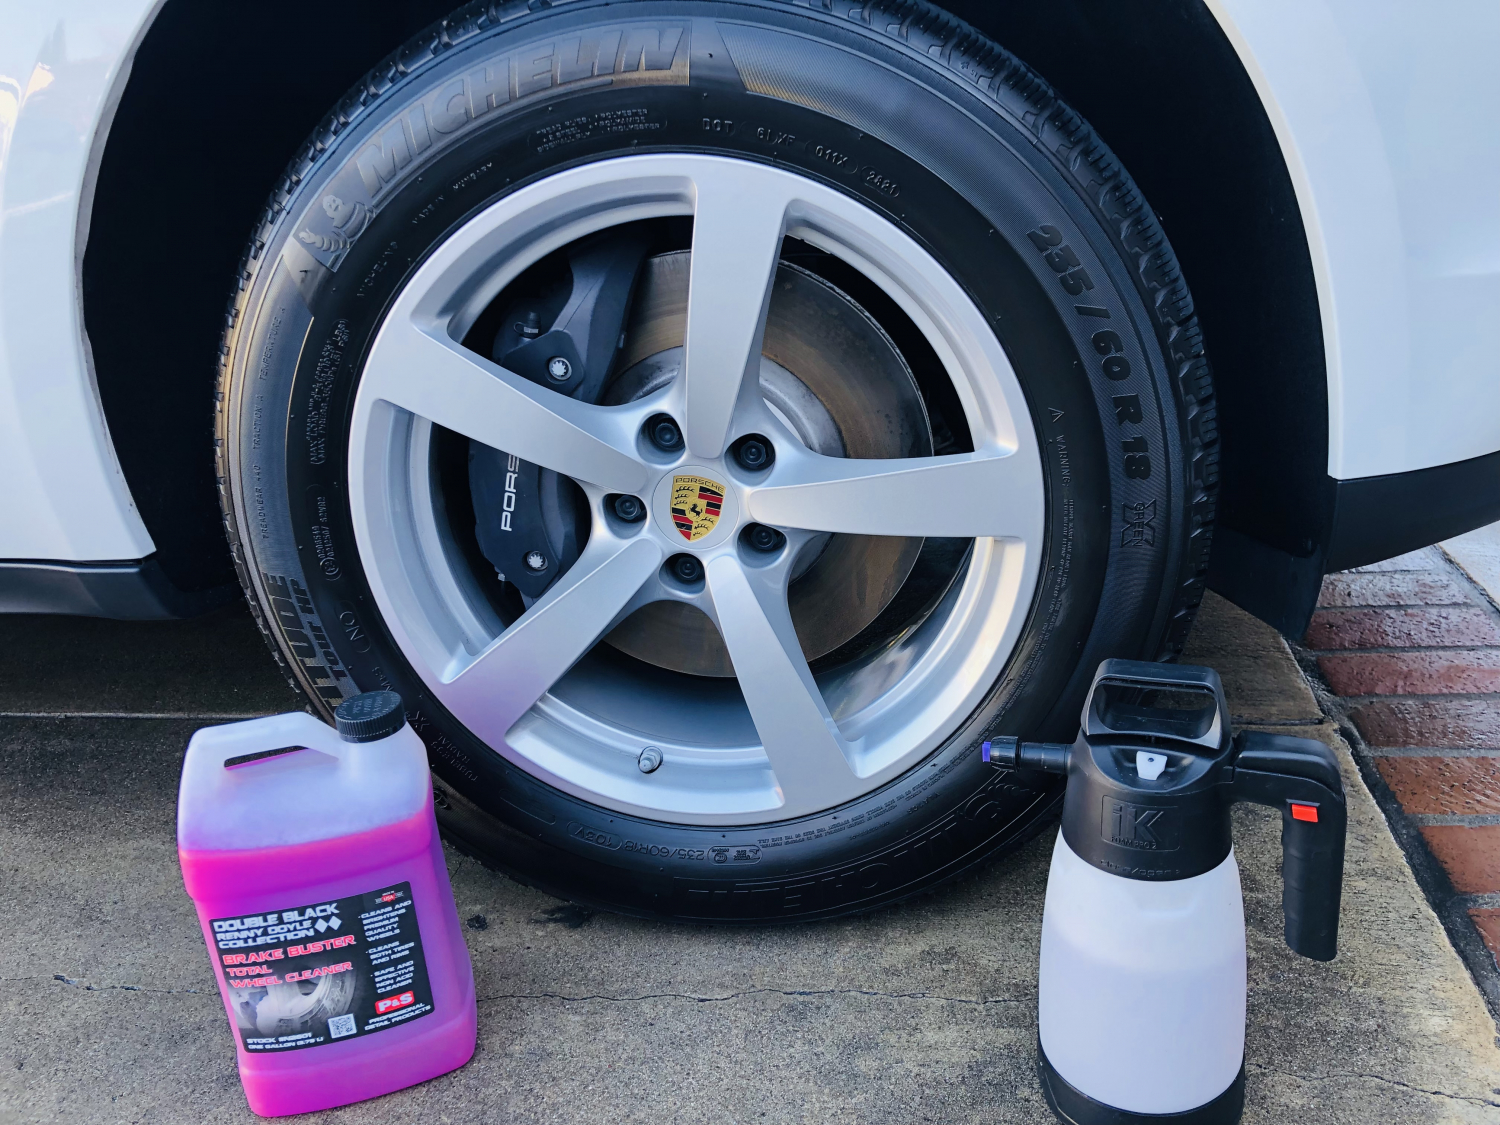 P&S Brake Buster Total Wheel Cleaner — Bling Bling King Clean